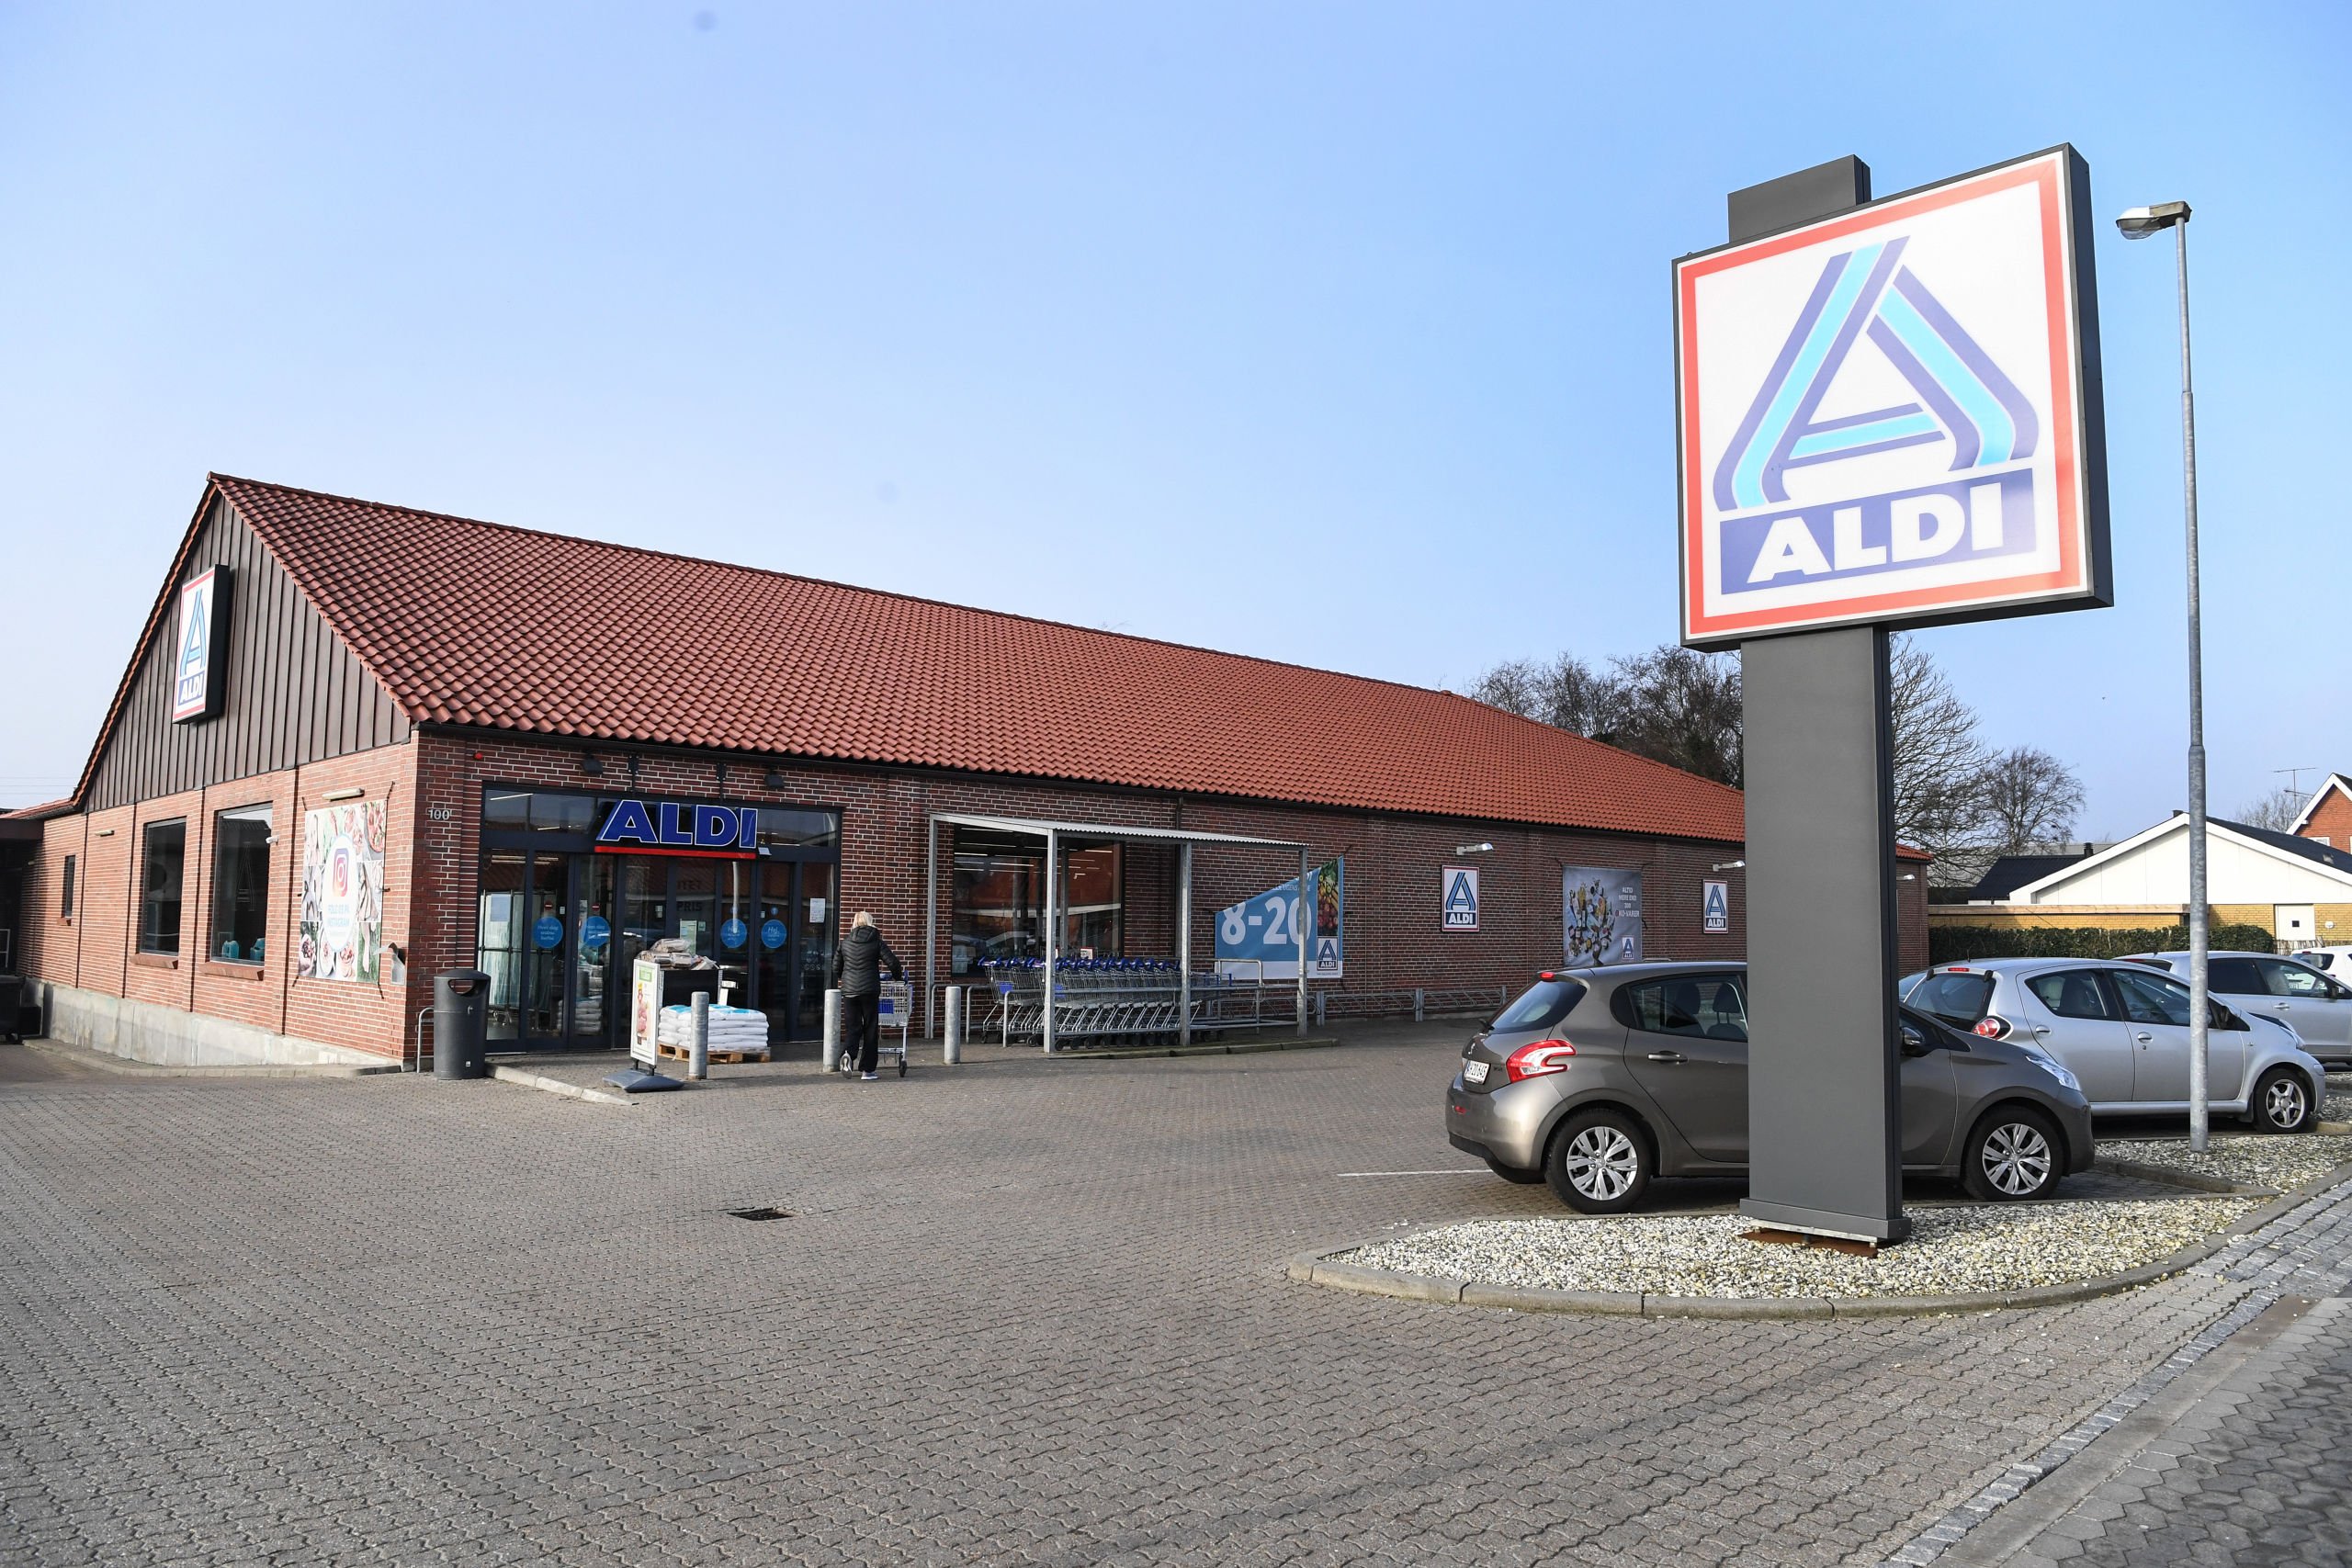 Her er planen: Se, hvornår Aldi lukker sine nordjyske butikker